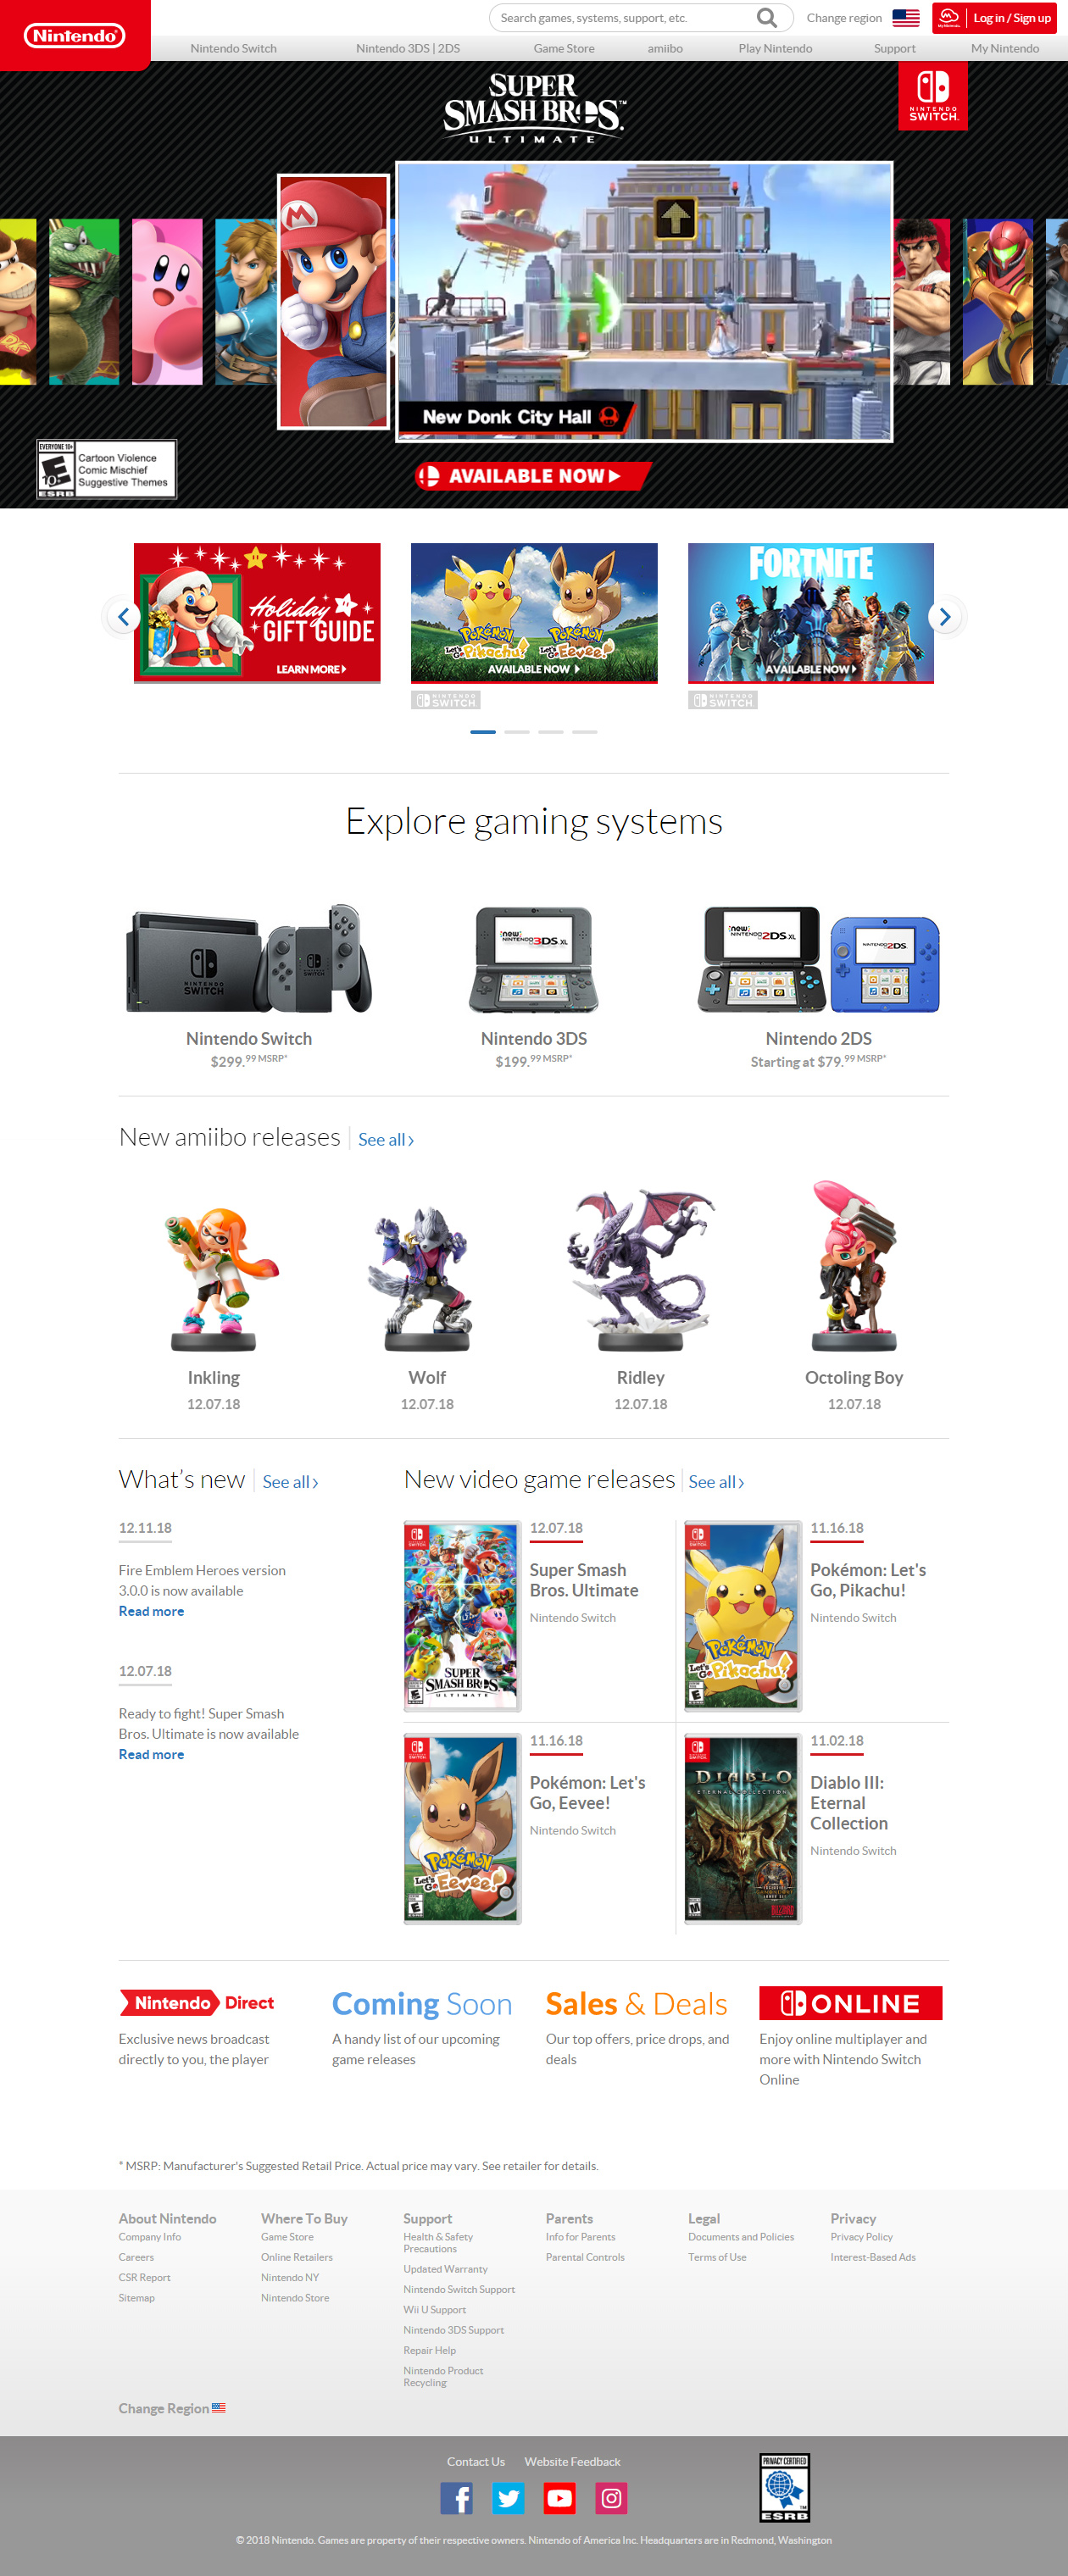 Nintendo website in 2018